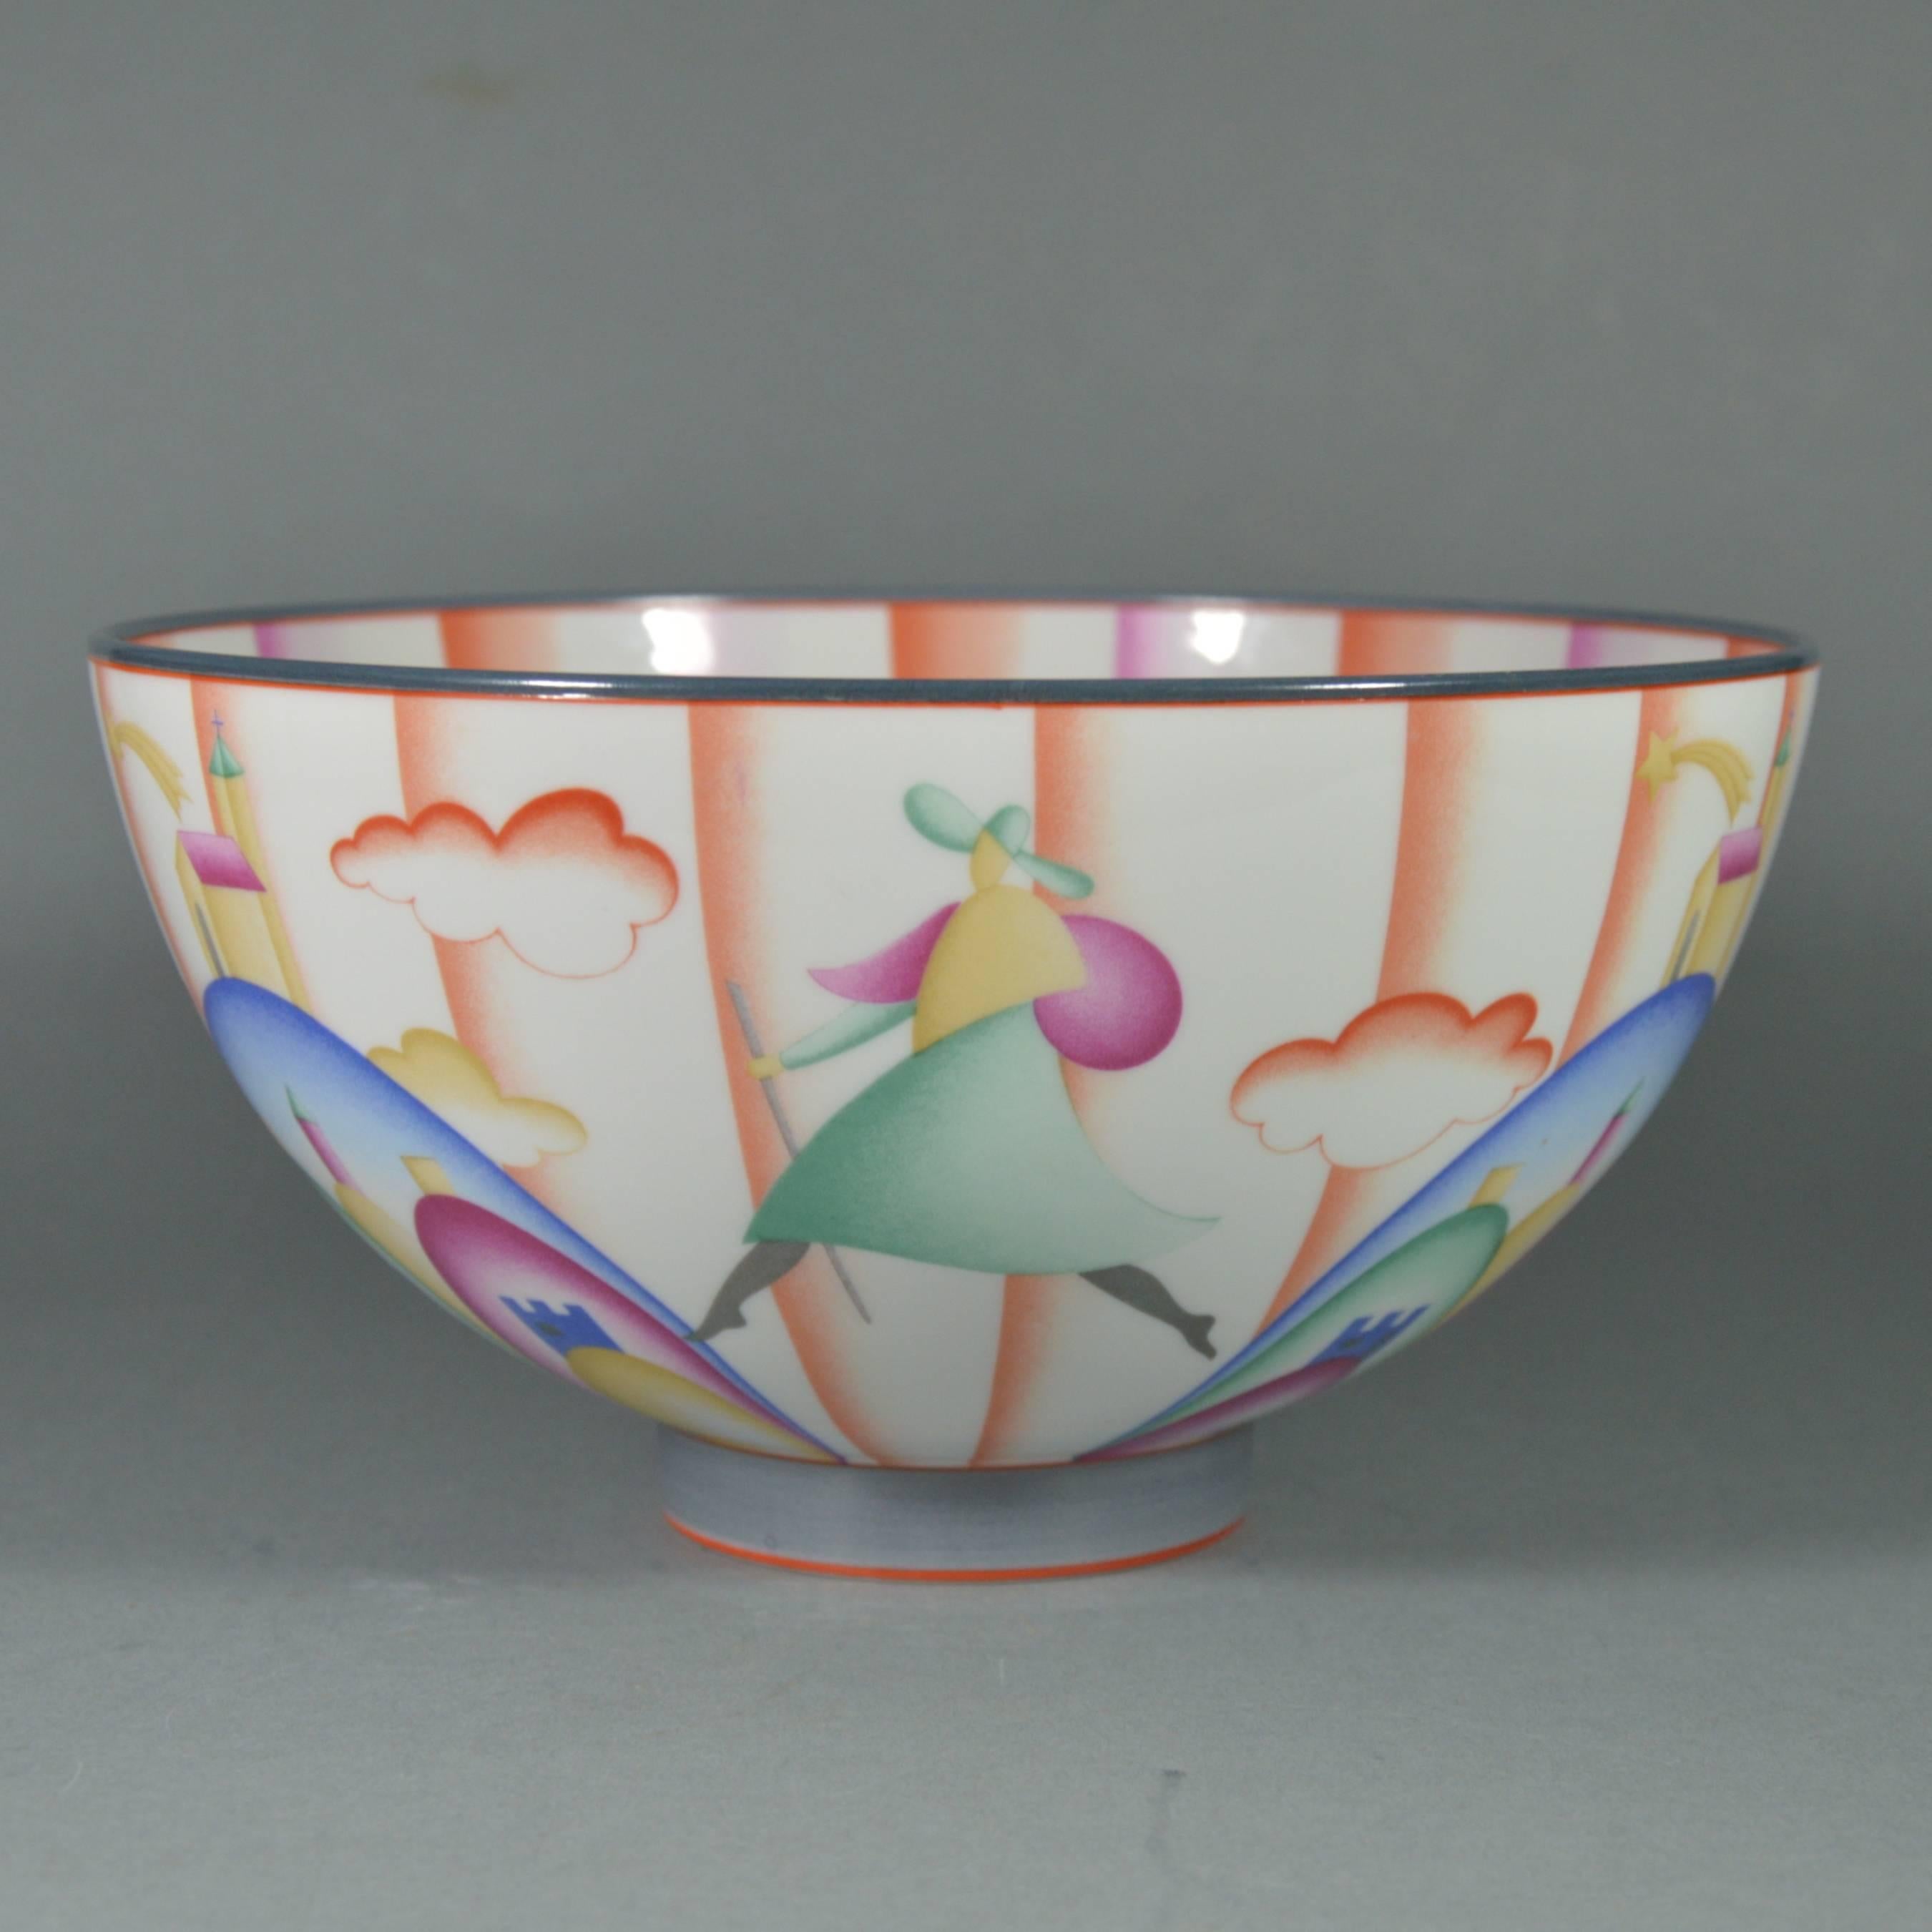 Italian Gio Ponti Art Deco Porcelain Bowl Il Pellegrino di Montesanto, 1925 For Sale